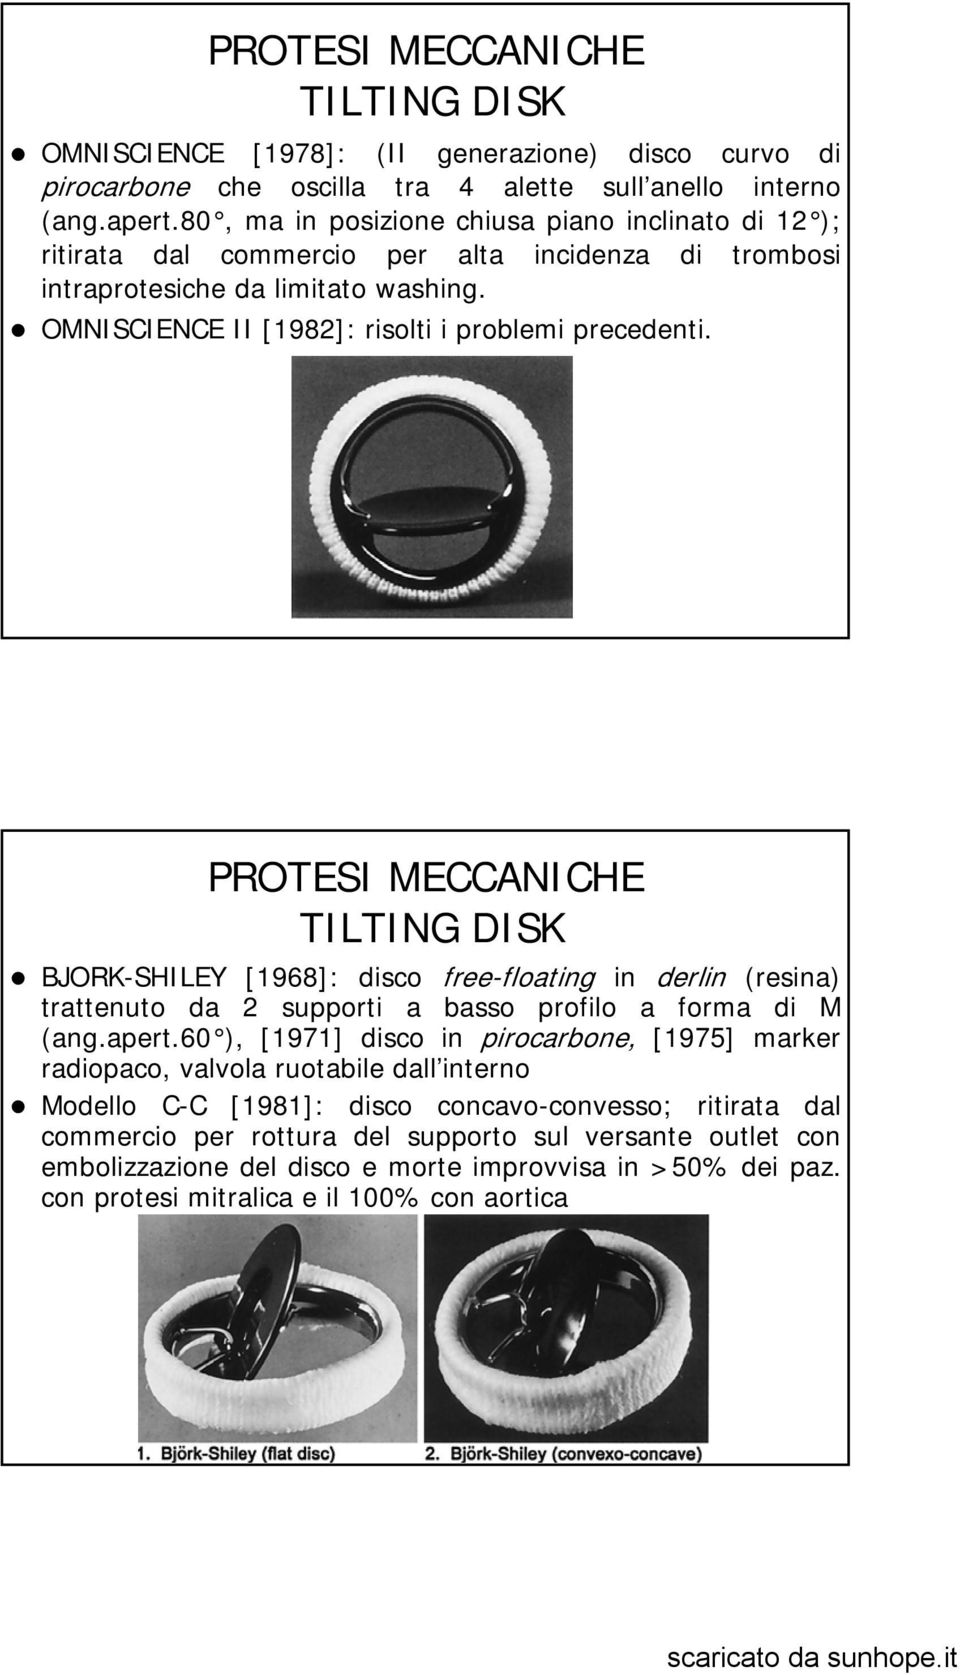 PROTESI MECCANICHE TILTING DISK BJORK-SHILEY [1968]: disco free-floating in derlin (resina) trattenuto da 2 supporti a basso profilo a forma di M (ang.apert.